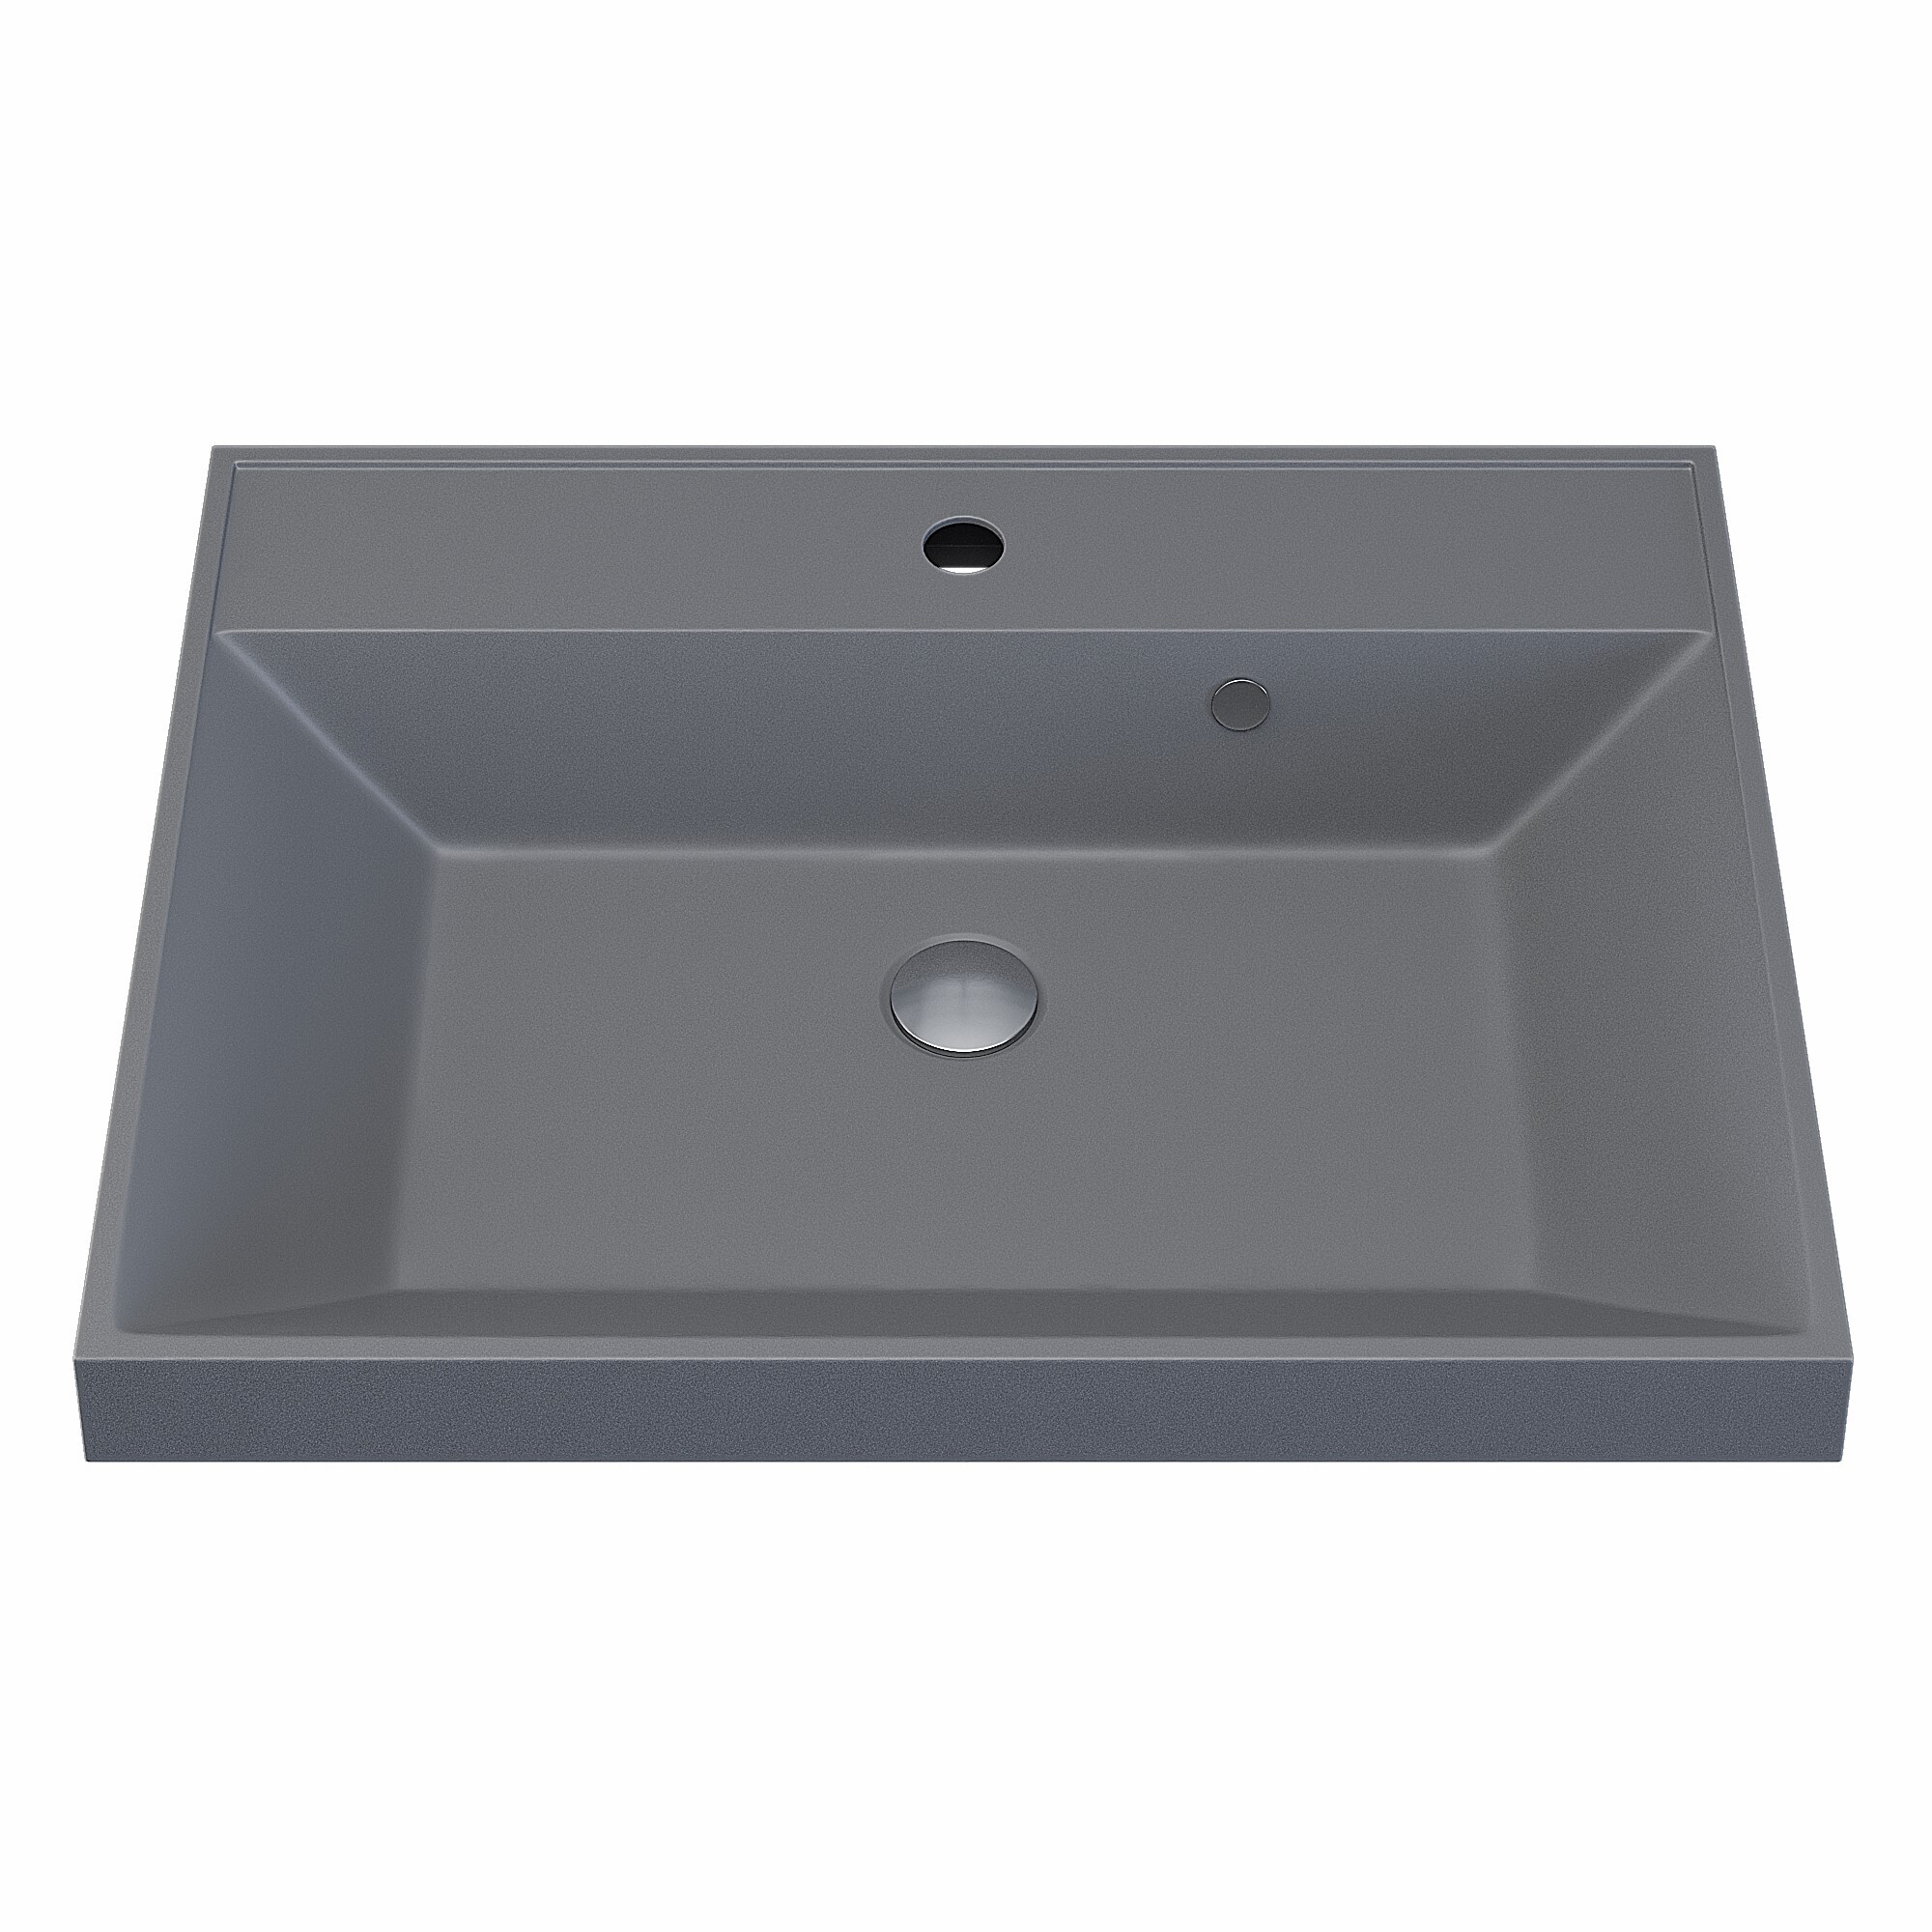 мойка для кухни кварцевая ulgran quartz nora 485 05 бетон Раковина кварцевая для ванной комнаты Uperwood Classic Quartz 60 см, серая матовая, бетон